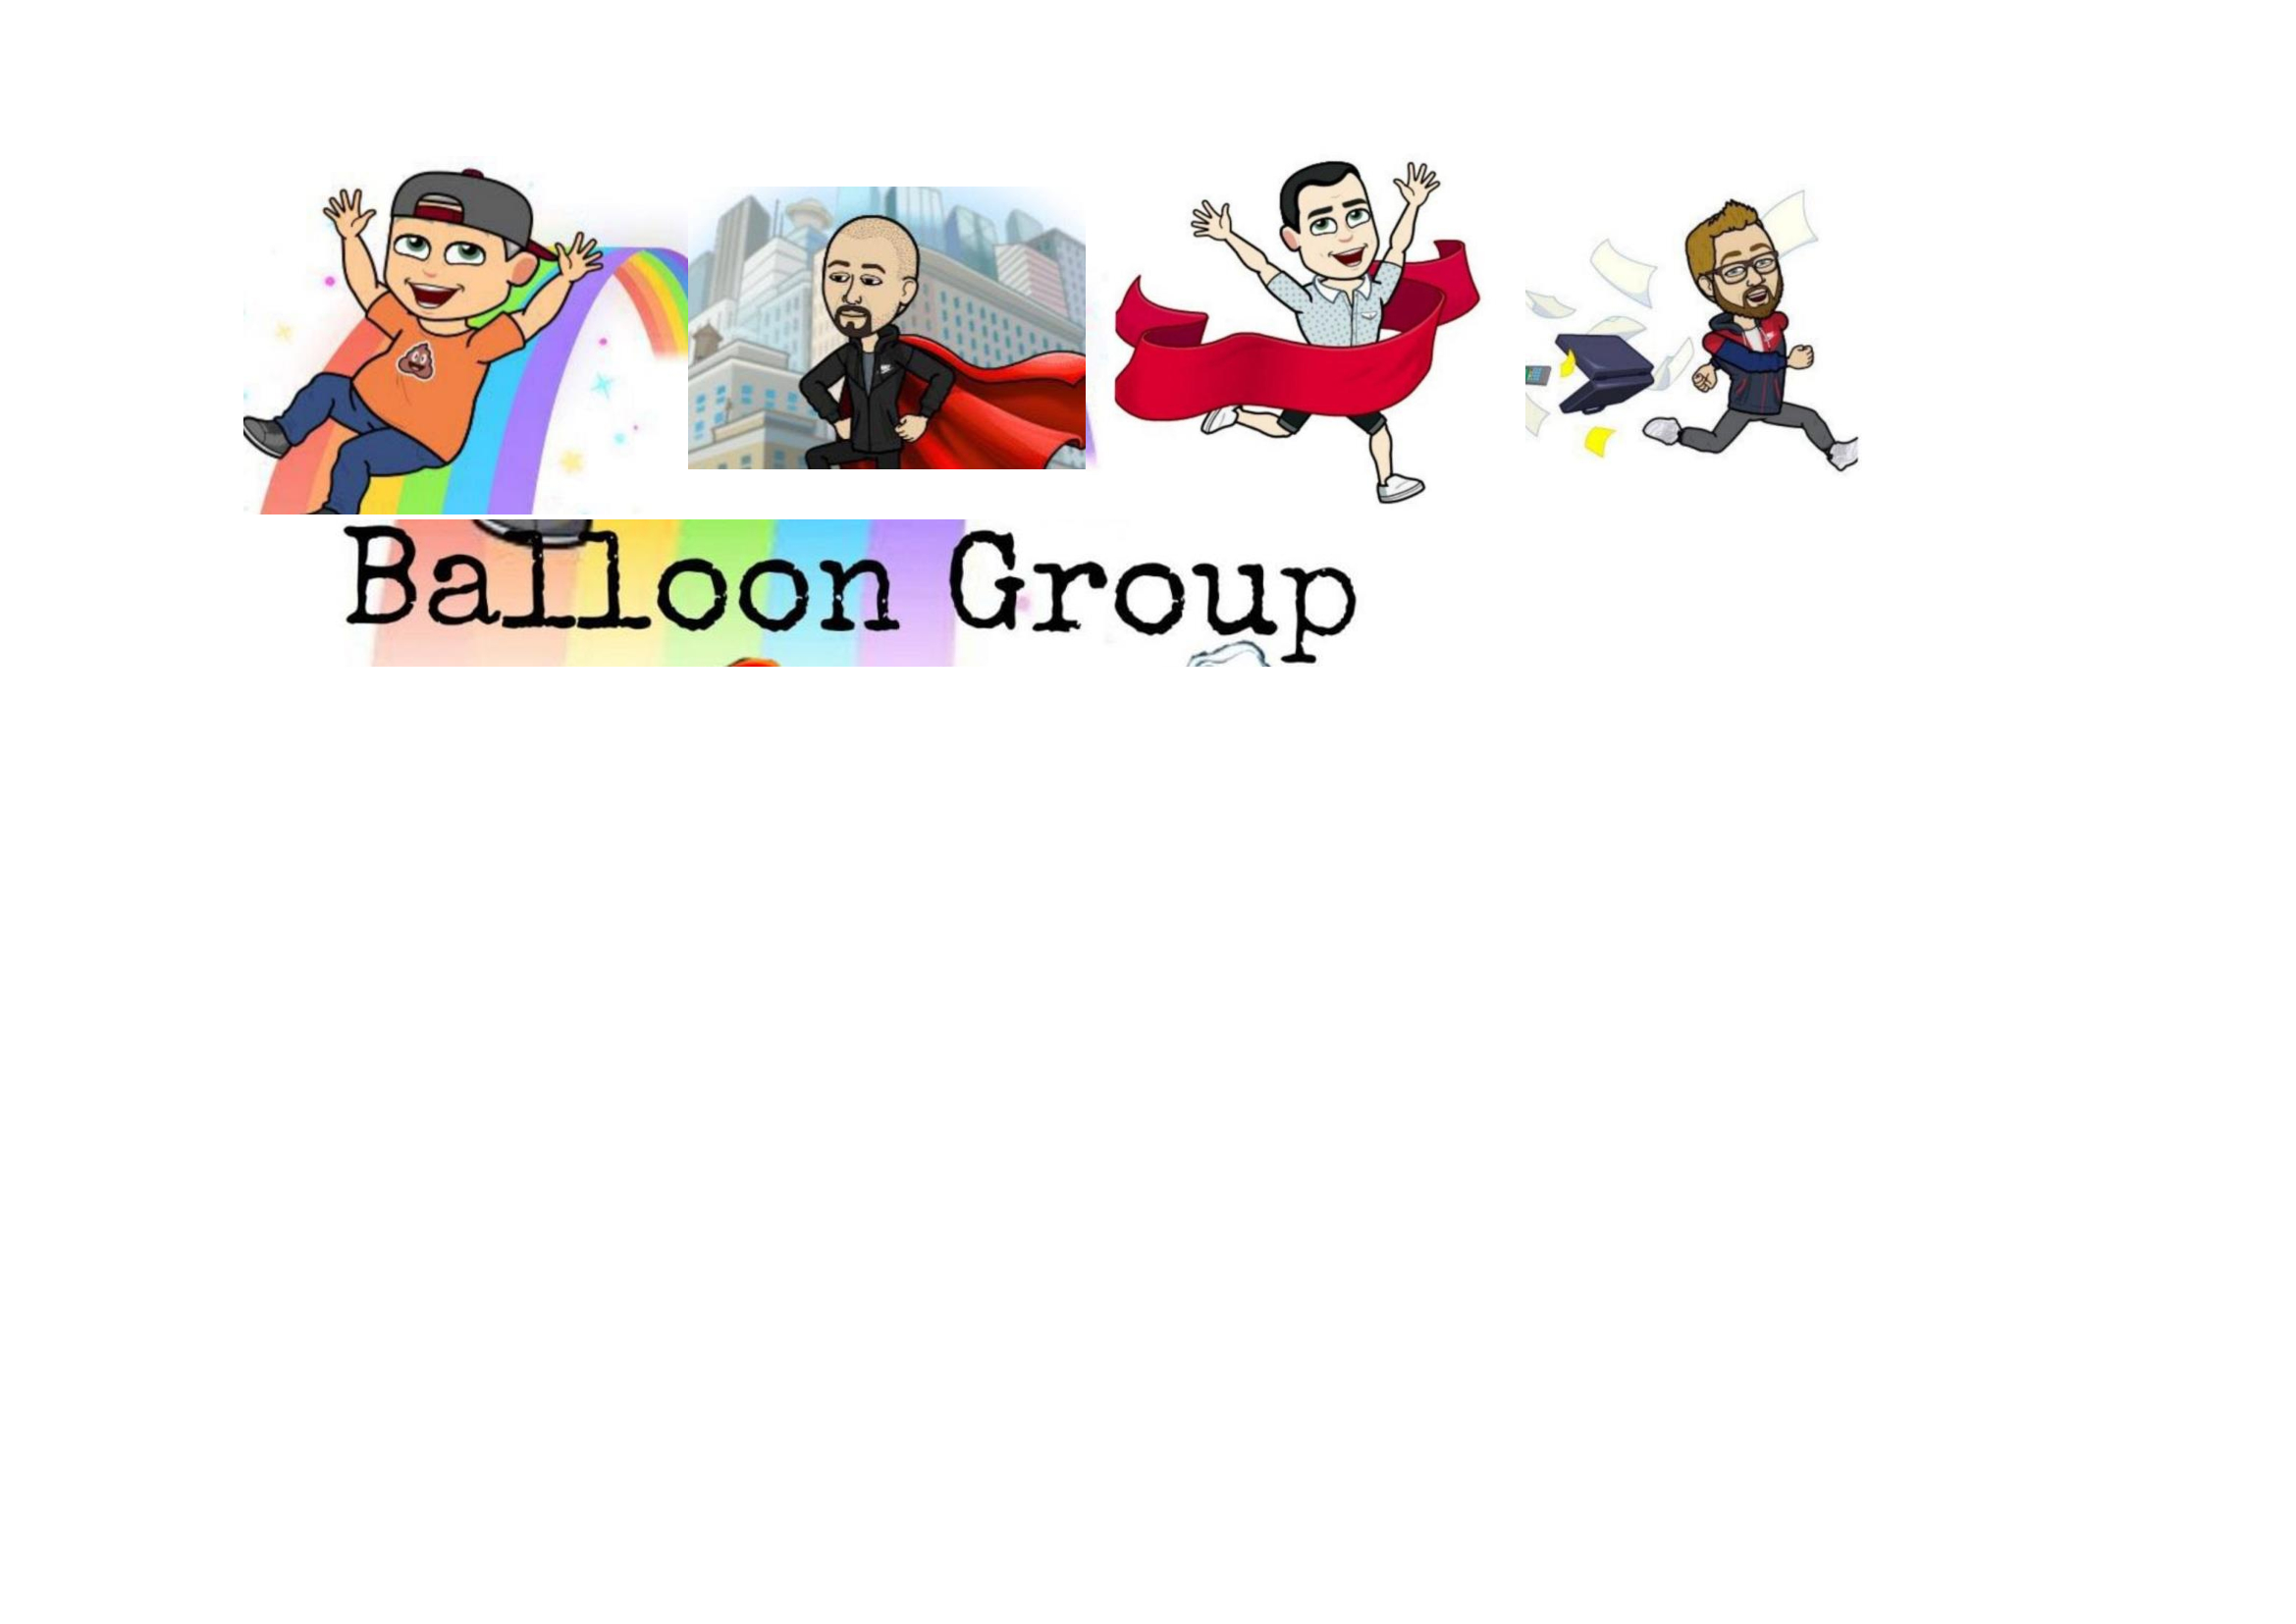 Balloon group-Andrea De Martino, Gil Elbaz, Giovanni Collevecchio, Giansalvatore Latella